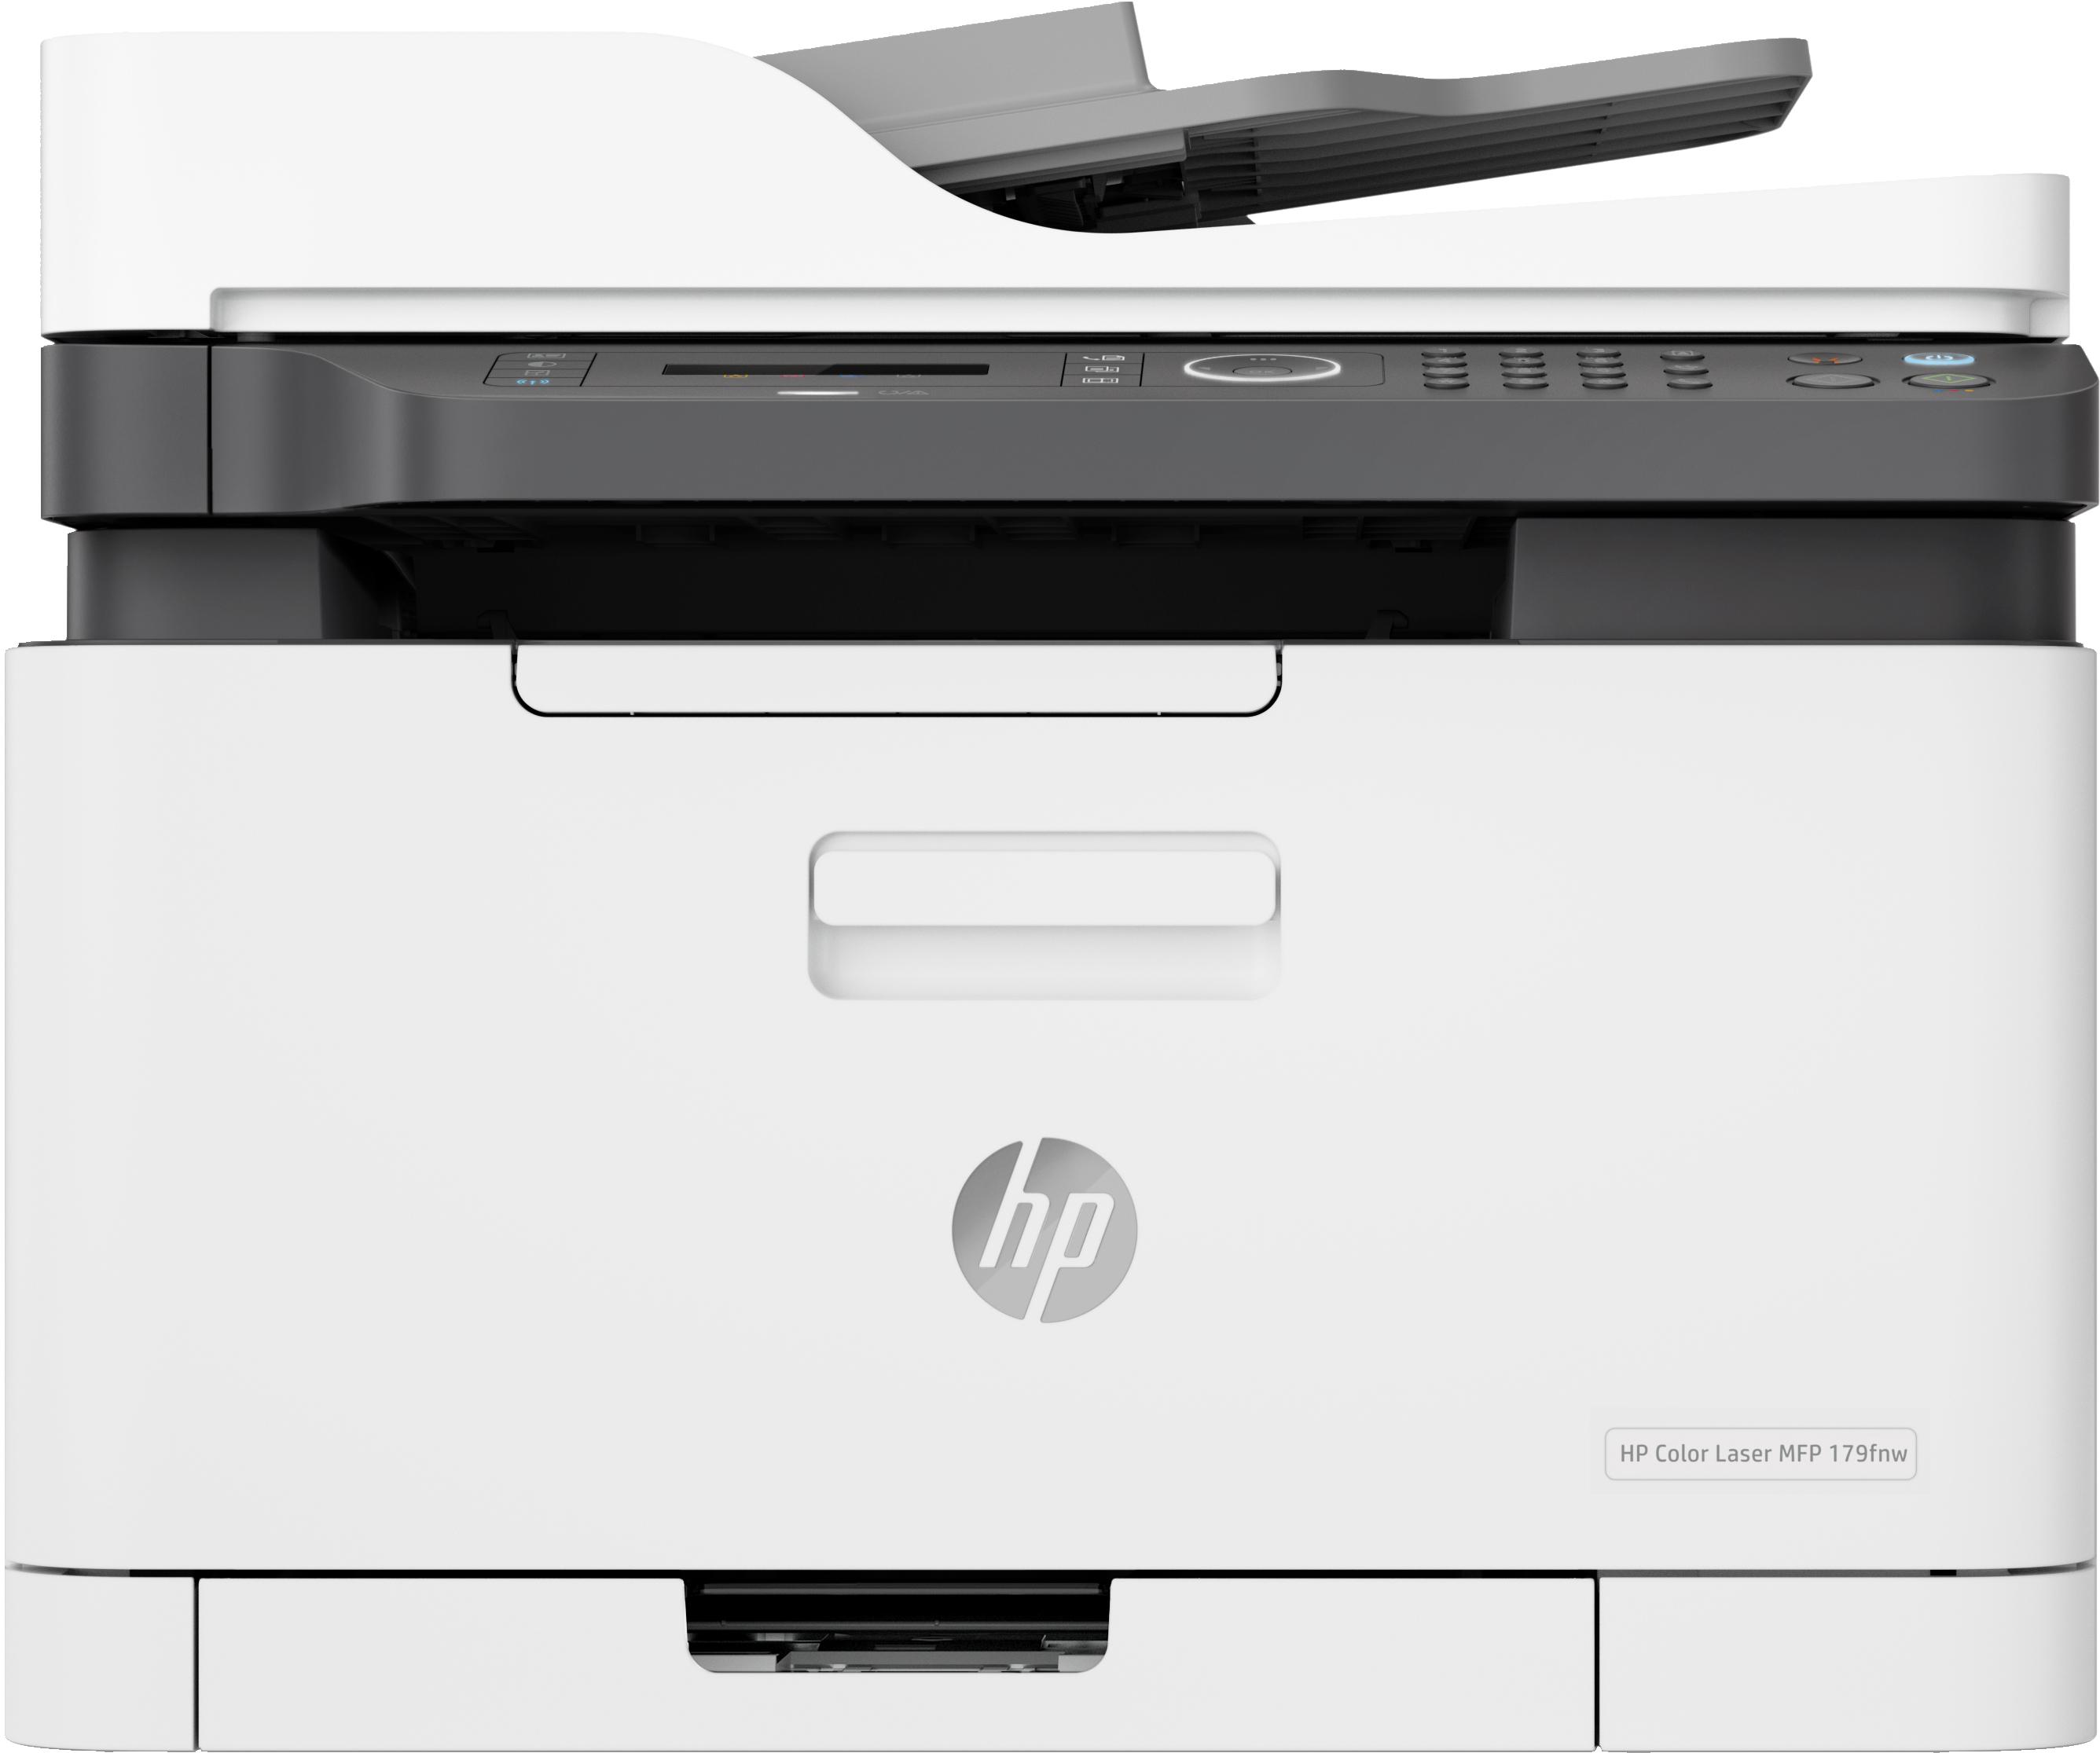 Impressora Jato de Tinta HP Laserjet Color MFP 179fnw